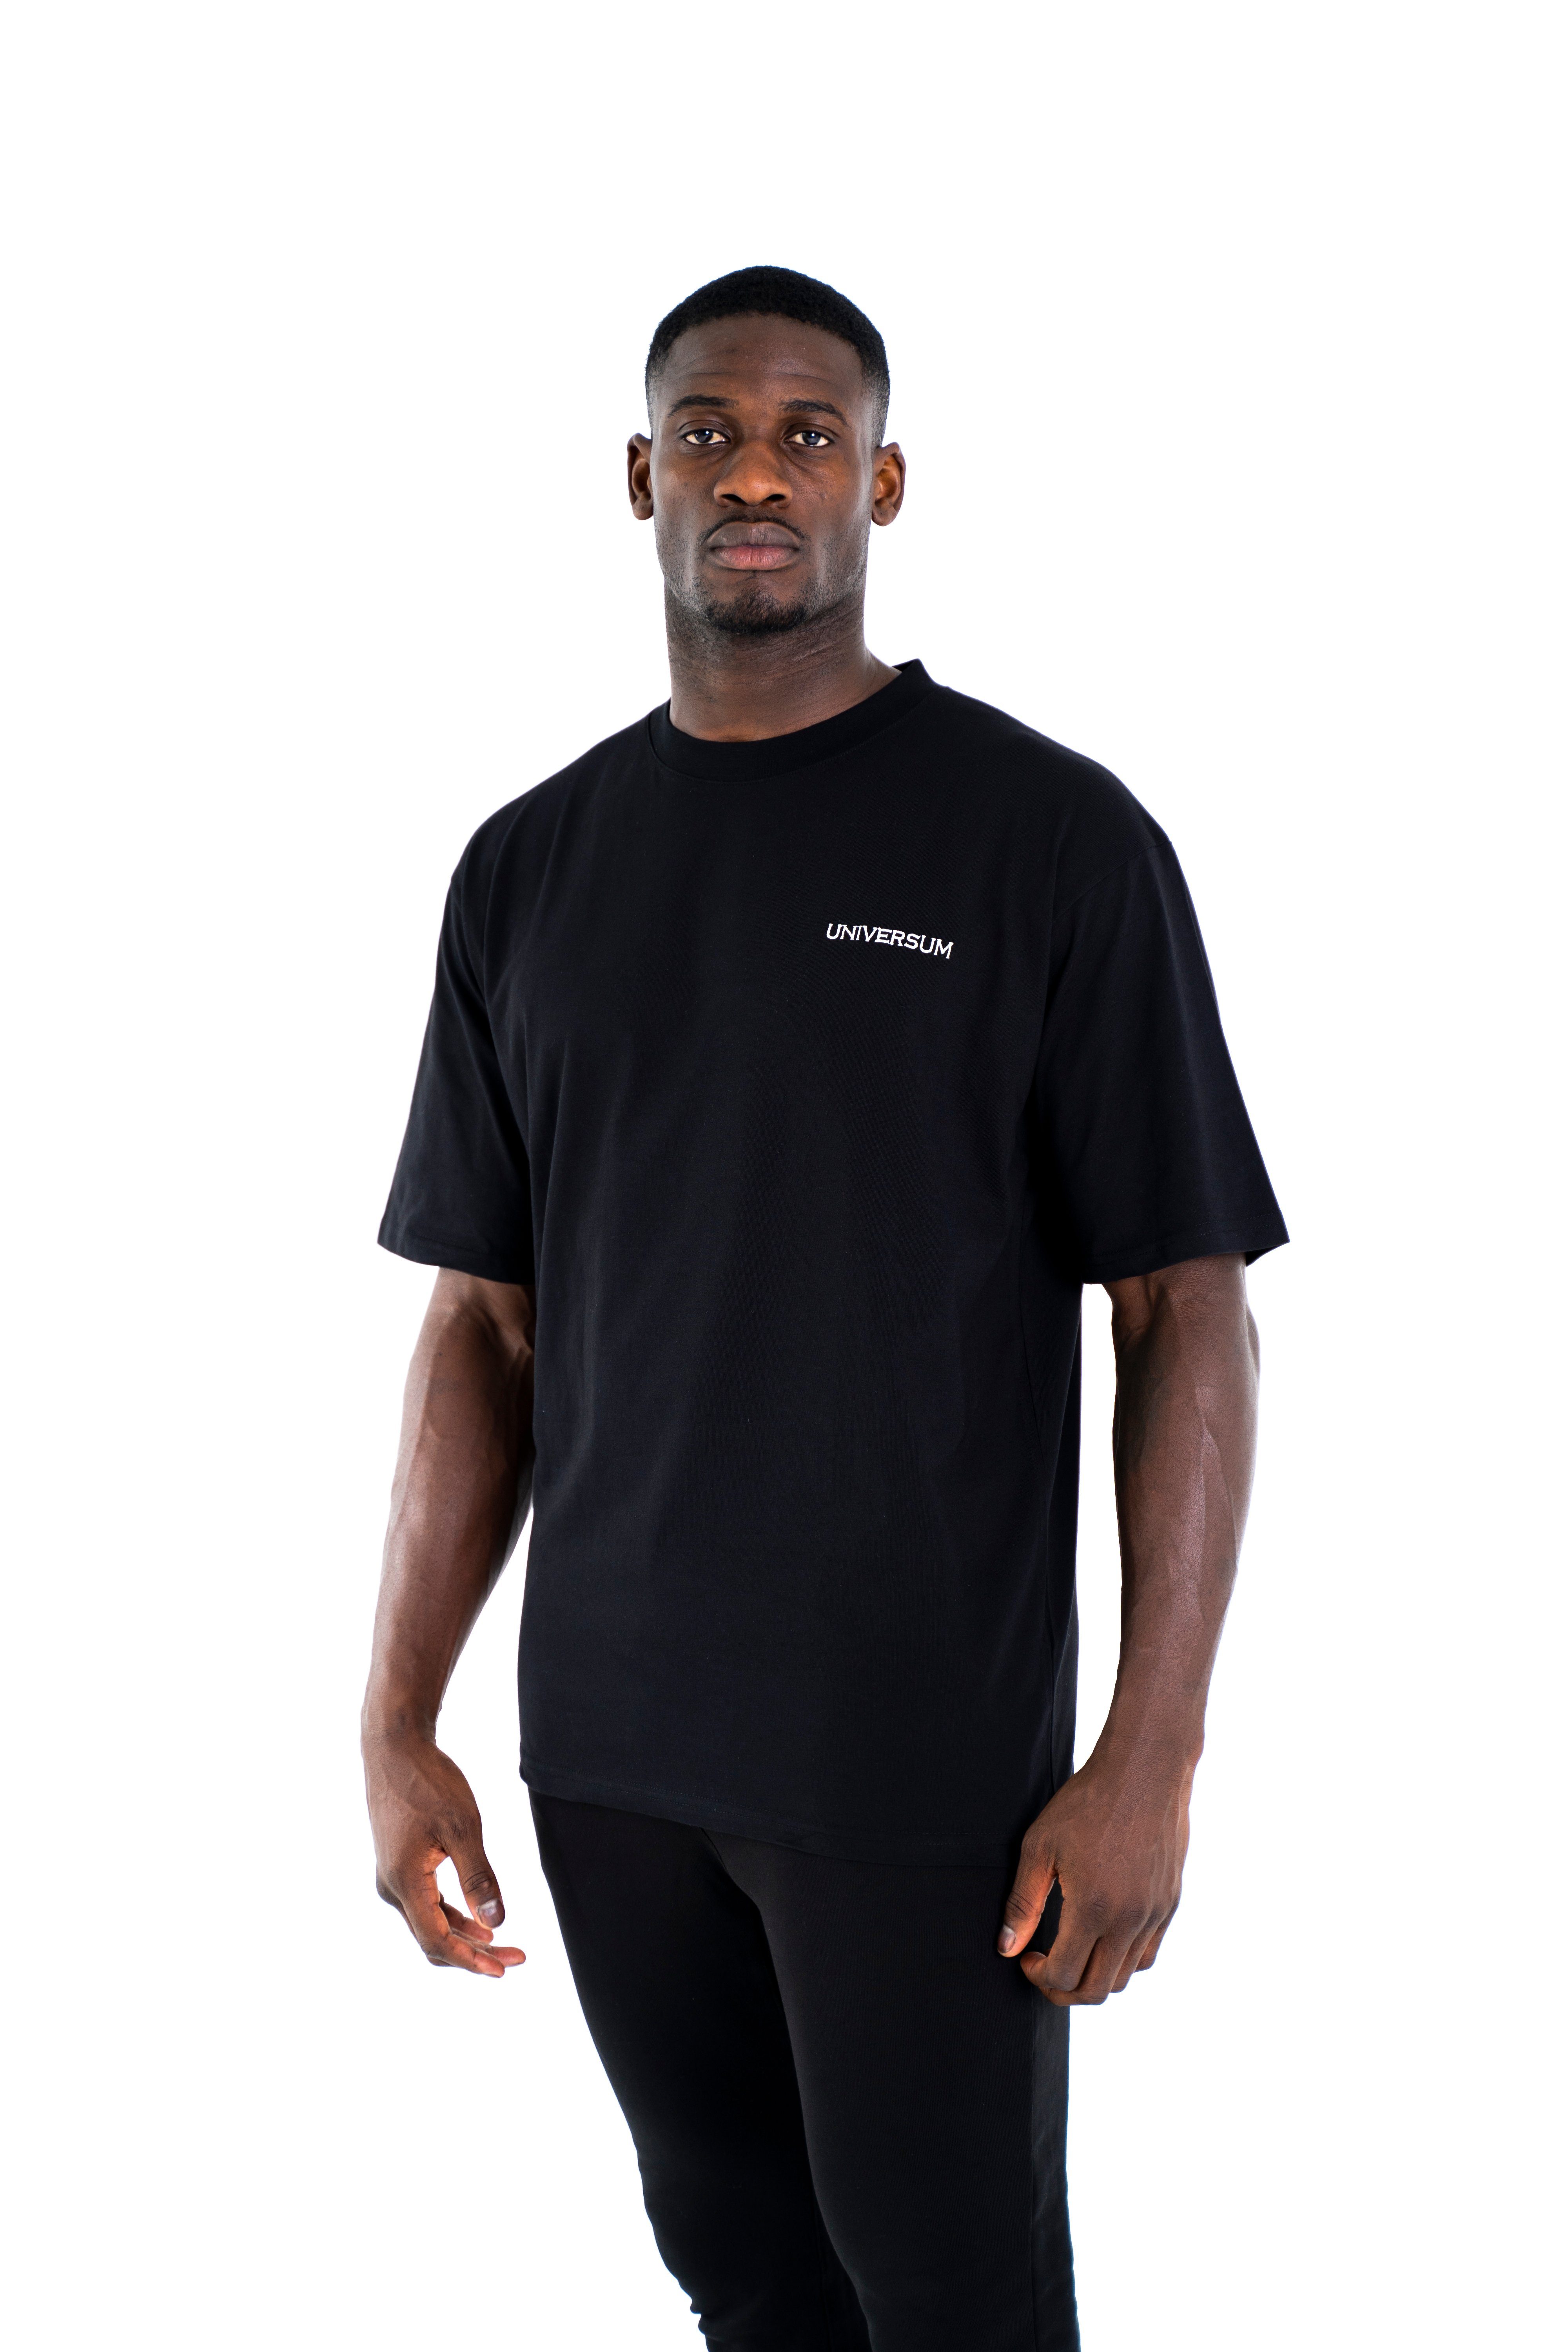 Universum T-Shirt Schwarz T-Shirt Modern 100% Rundhalsausschnitt, Cotton Baumwoll Sportwear Oversize Shirt, C-Neck